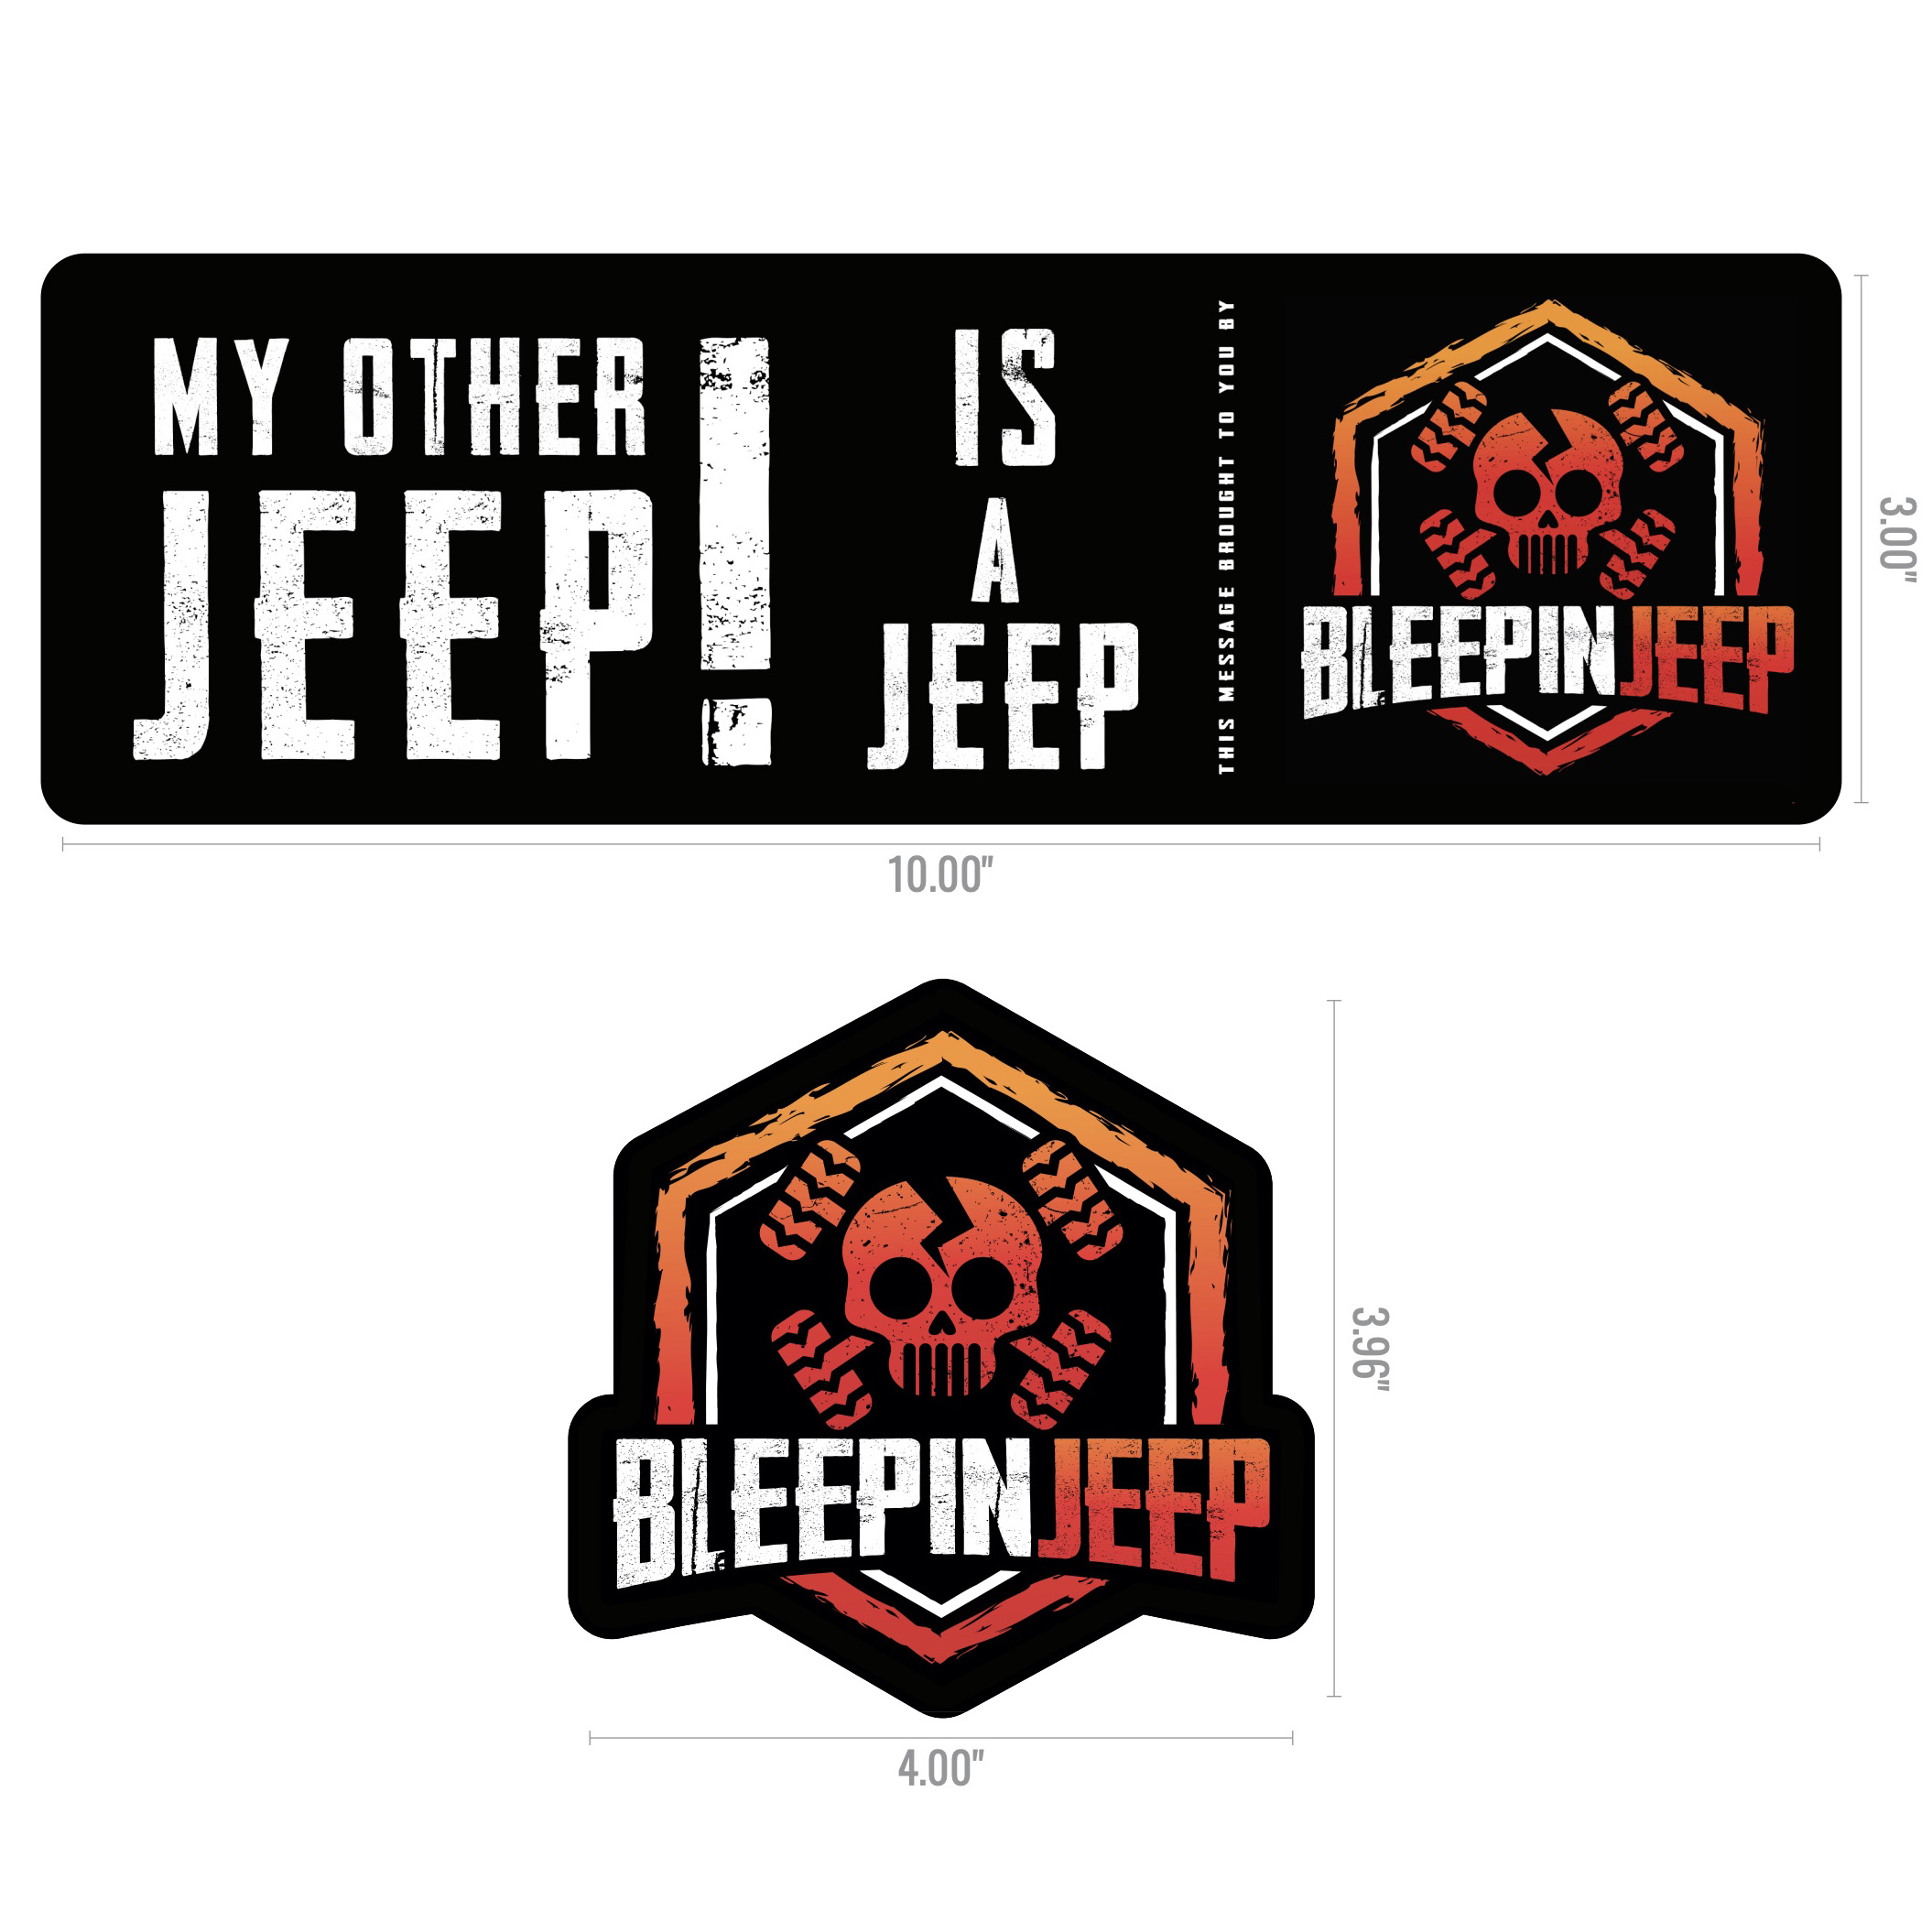 DeadJeep Logo Bumper Sticker Emblem Decal